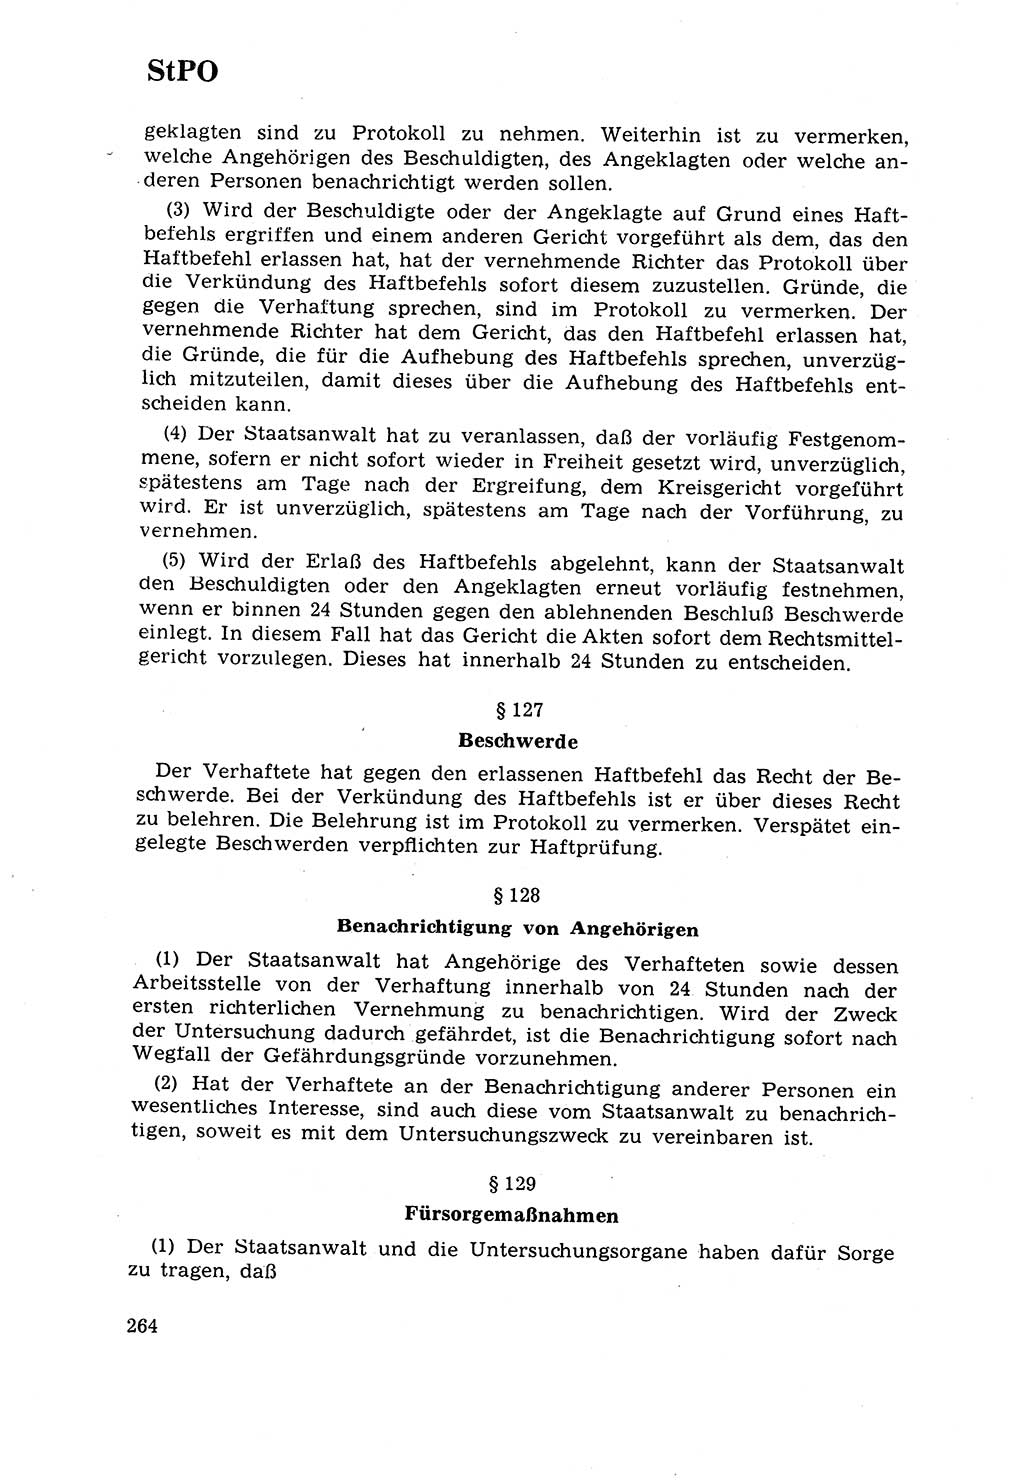 Strafrecht [Deutsche Demokratische Republik (DDR)] 1968, Seite 264 (Strafr. DDR 1968, S. 264)